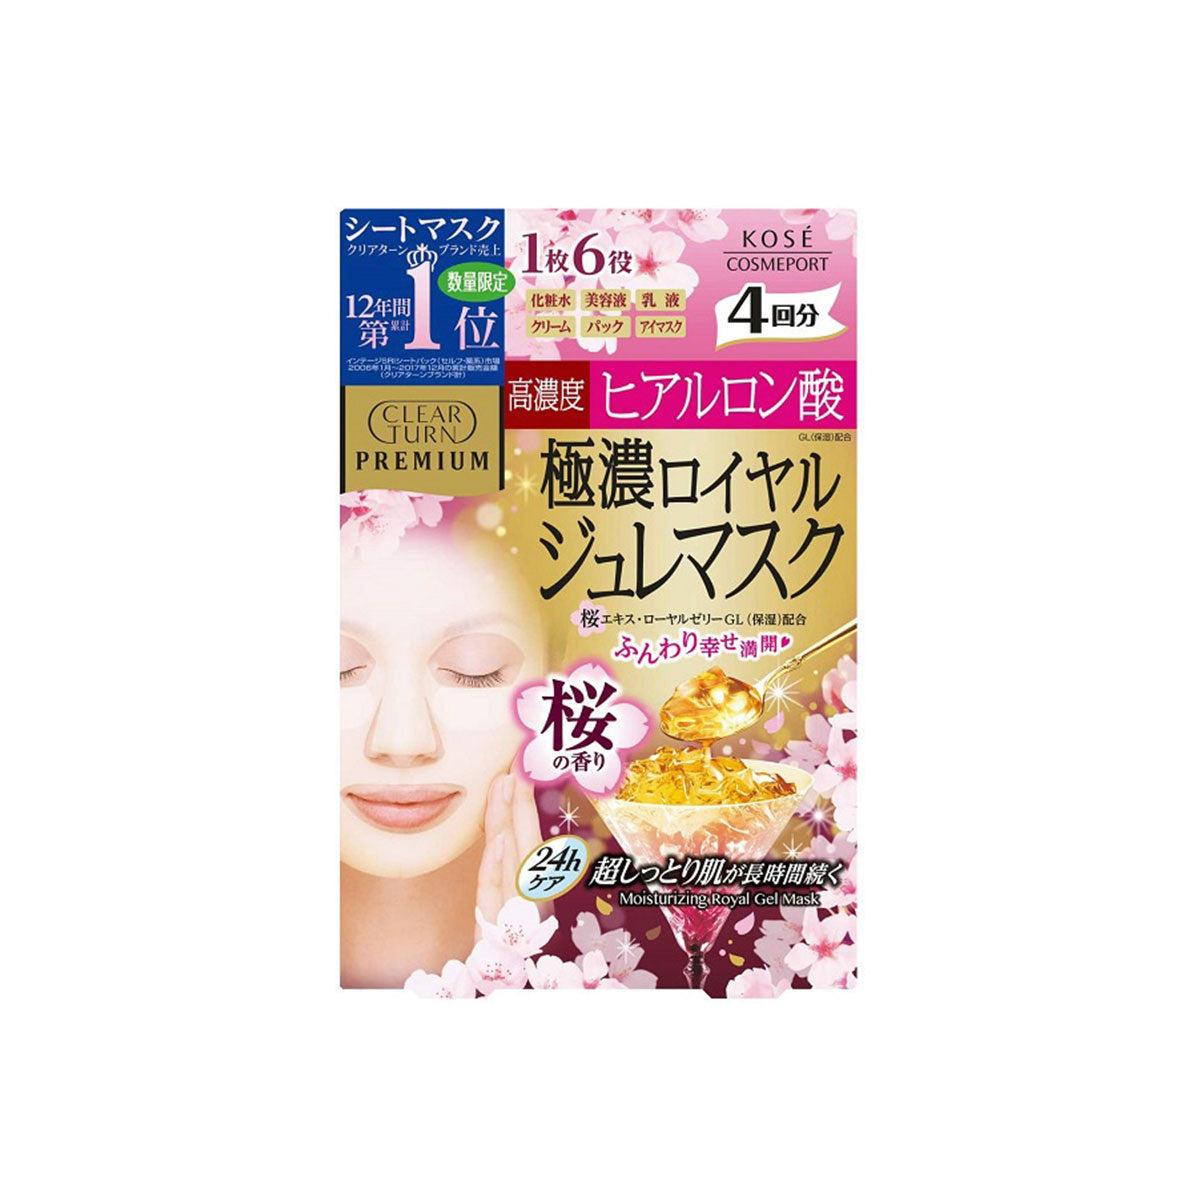 日本高丝KOSE蜂王浆精华高保湿樱花限定面膜 4片